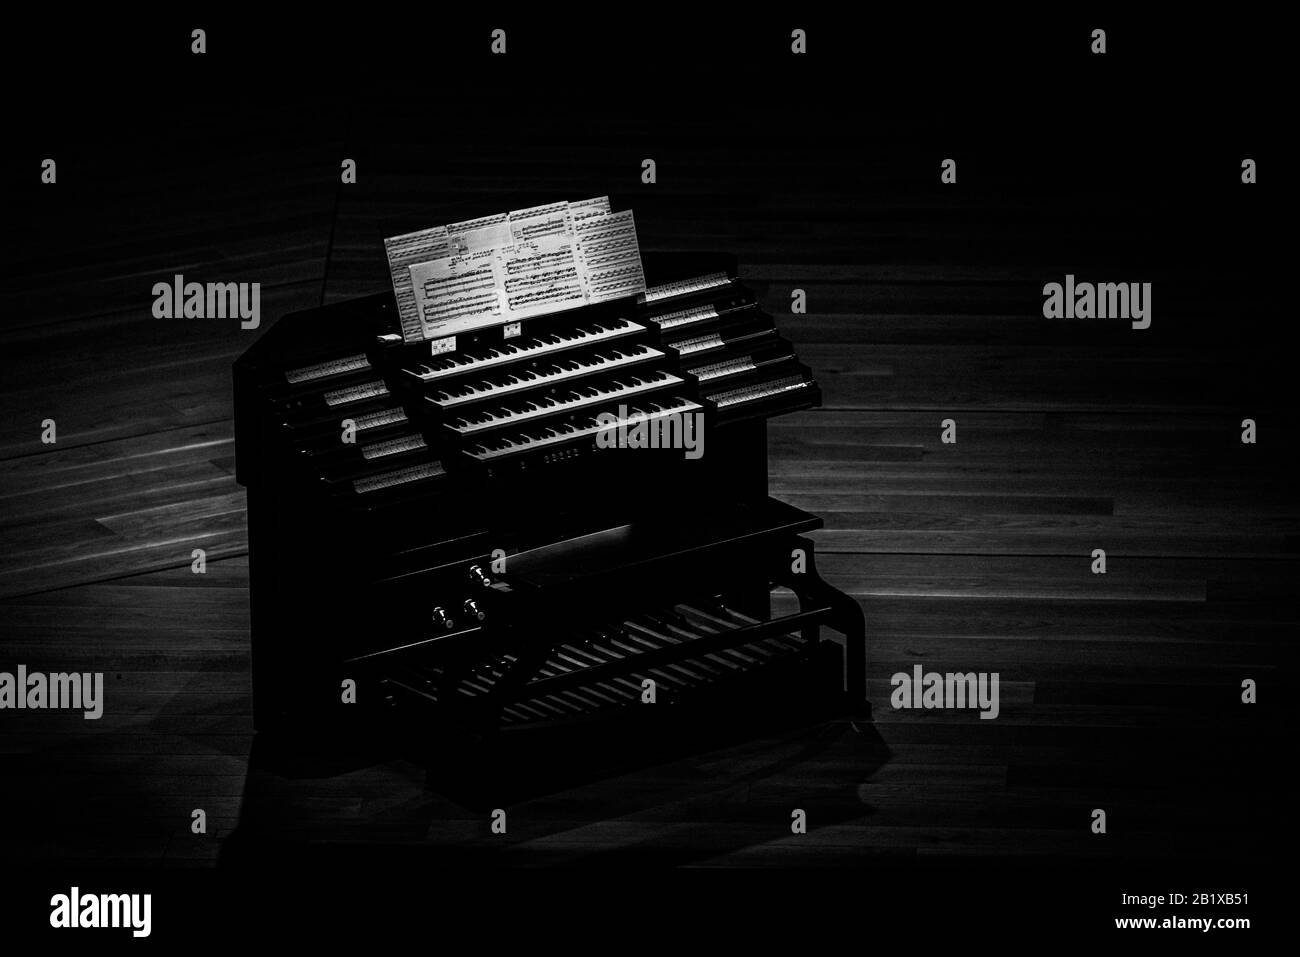 un orgue électrique moderne est placé sur la scène éclairée par des lumières, en attendant les artistes qui pourront montrer ce que ces organes peuvent apporter à l'art de m. Banque D'Images